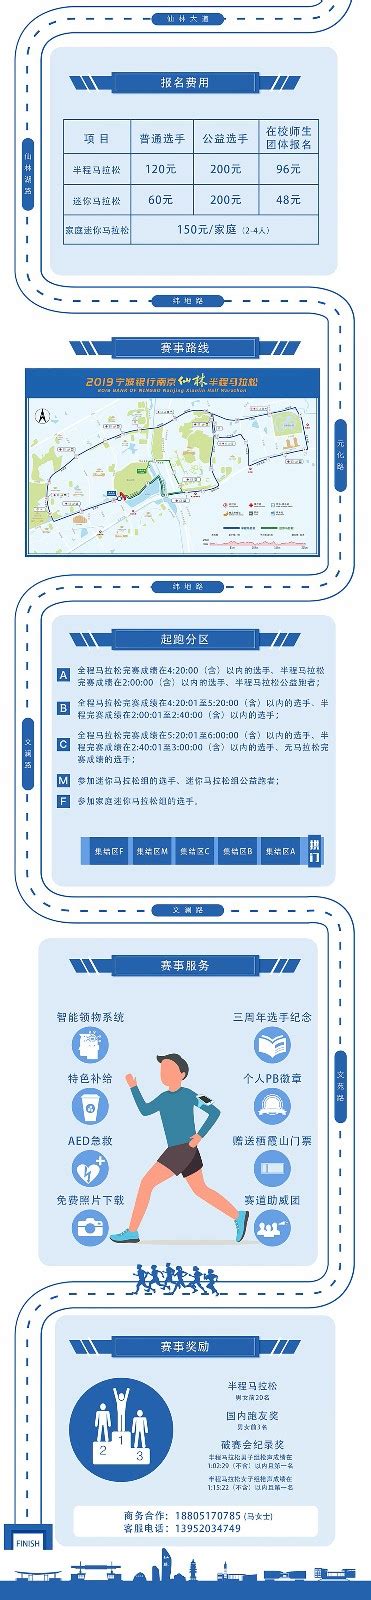 2019宁波银行南京仙林半程马拉松官方网站-比赛公告详情